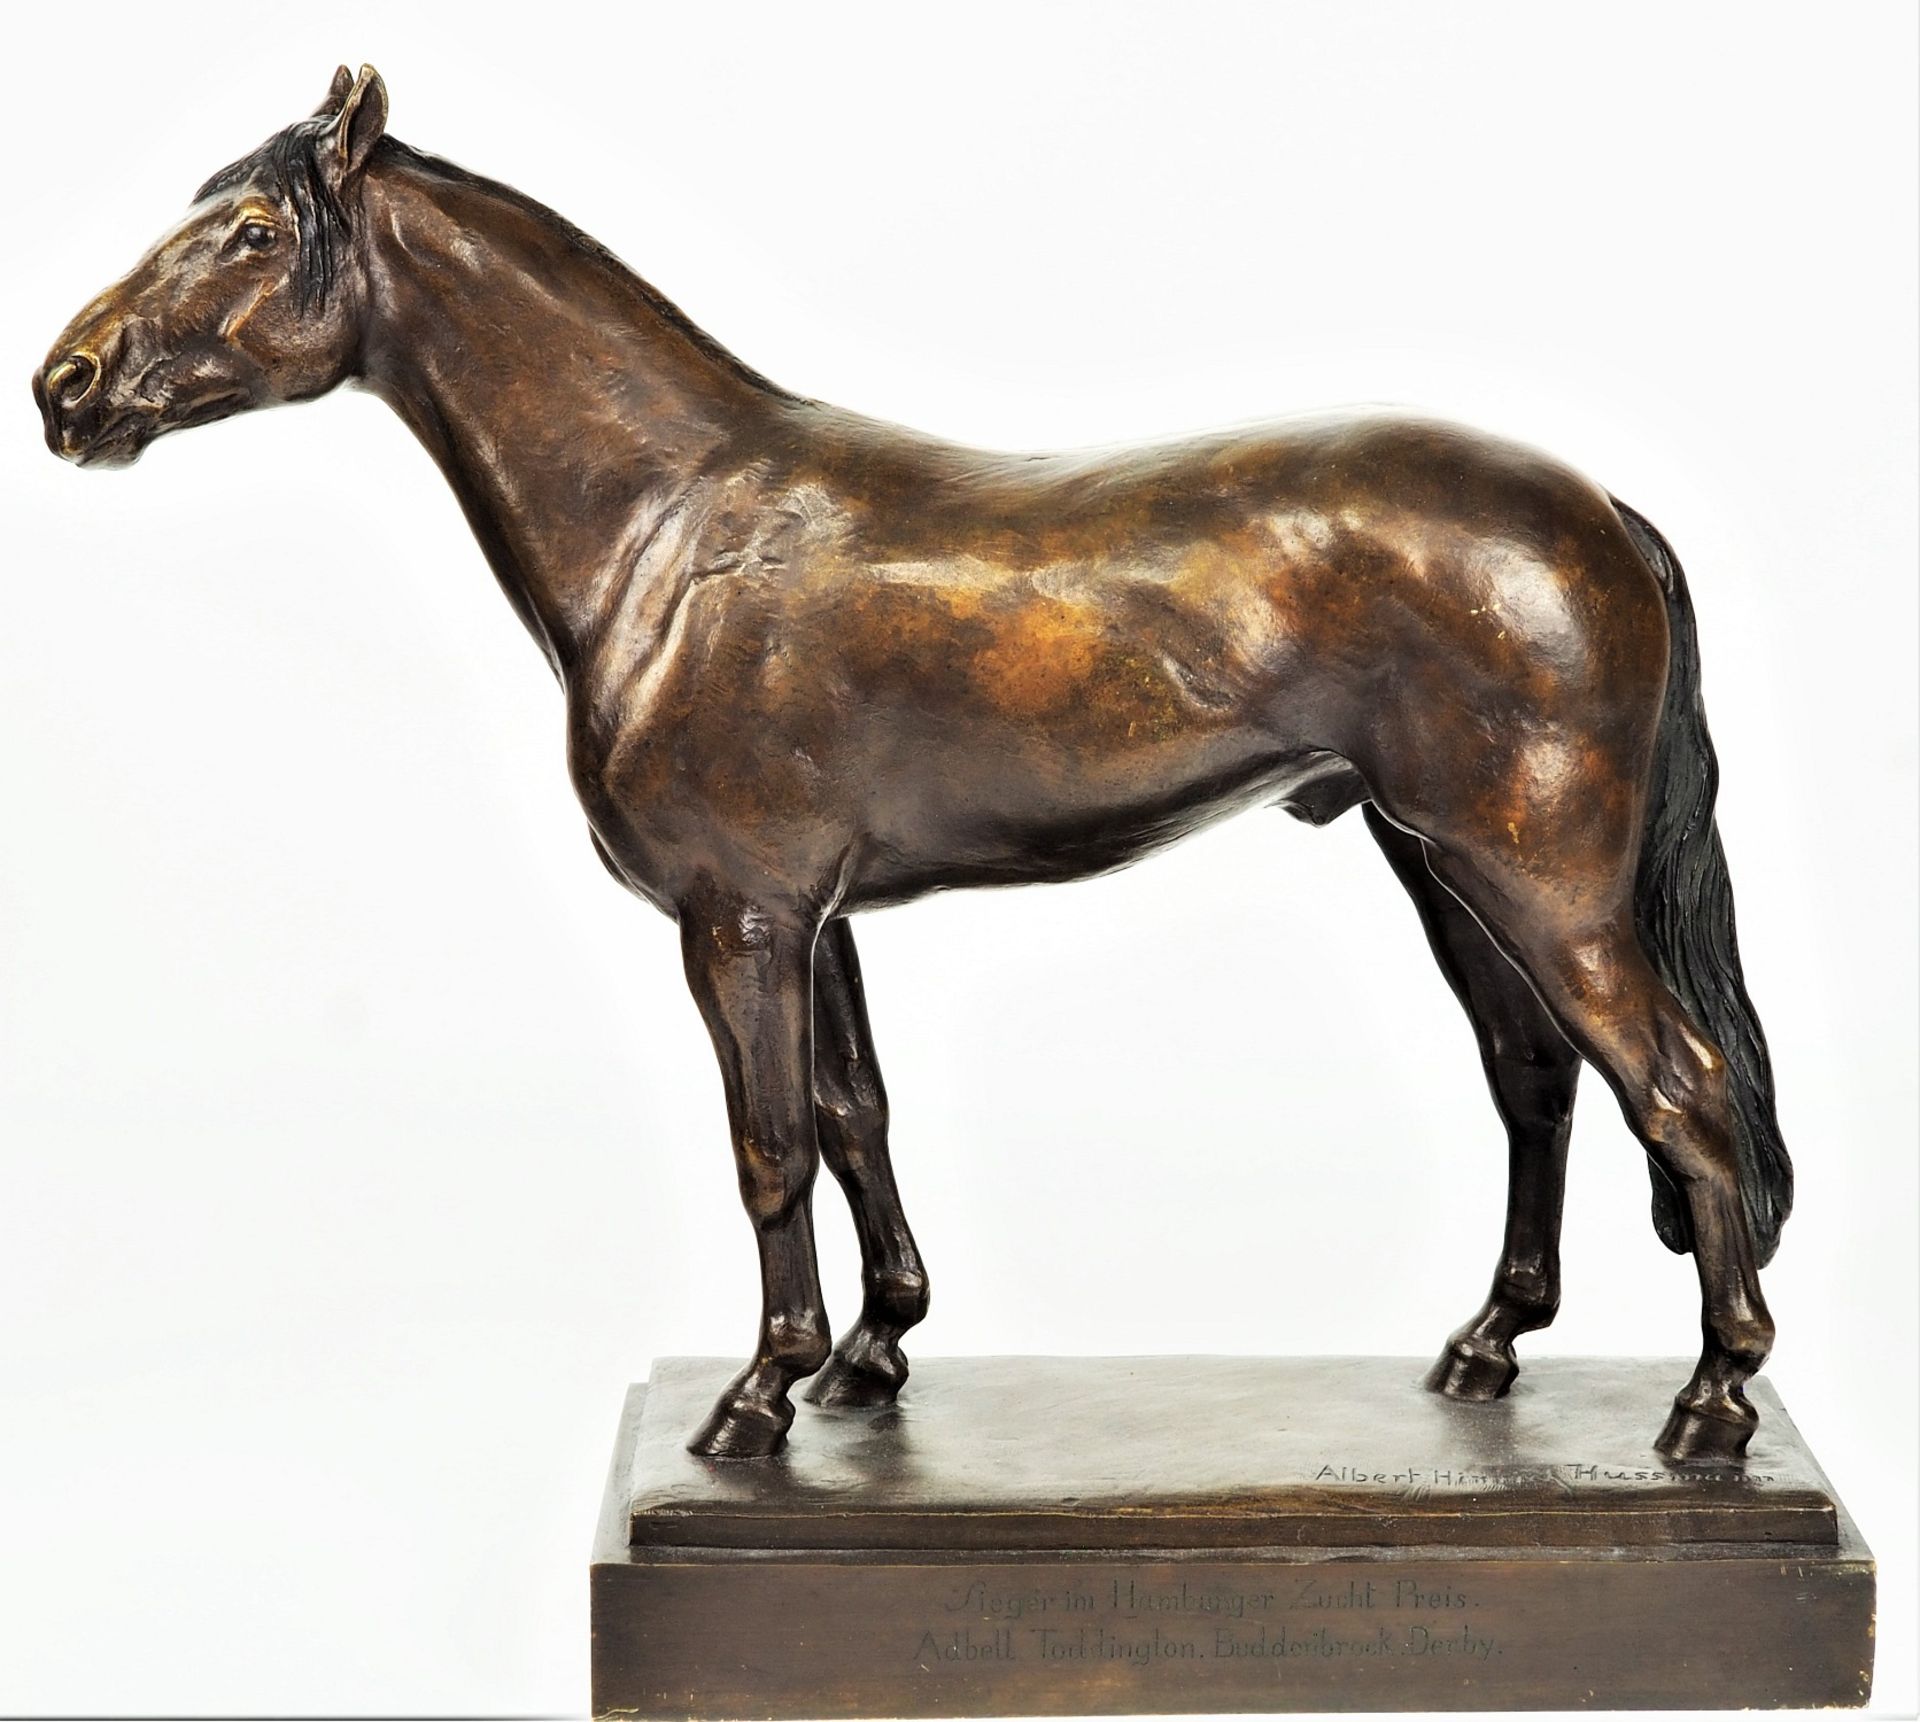 Albert Hinrich Hussmann (1874, Cuxhaven - 1946, Berlin) - Standing Horse